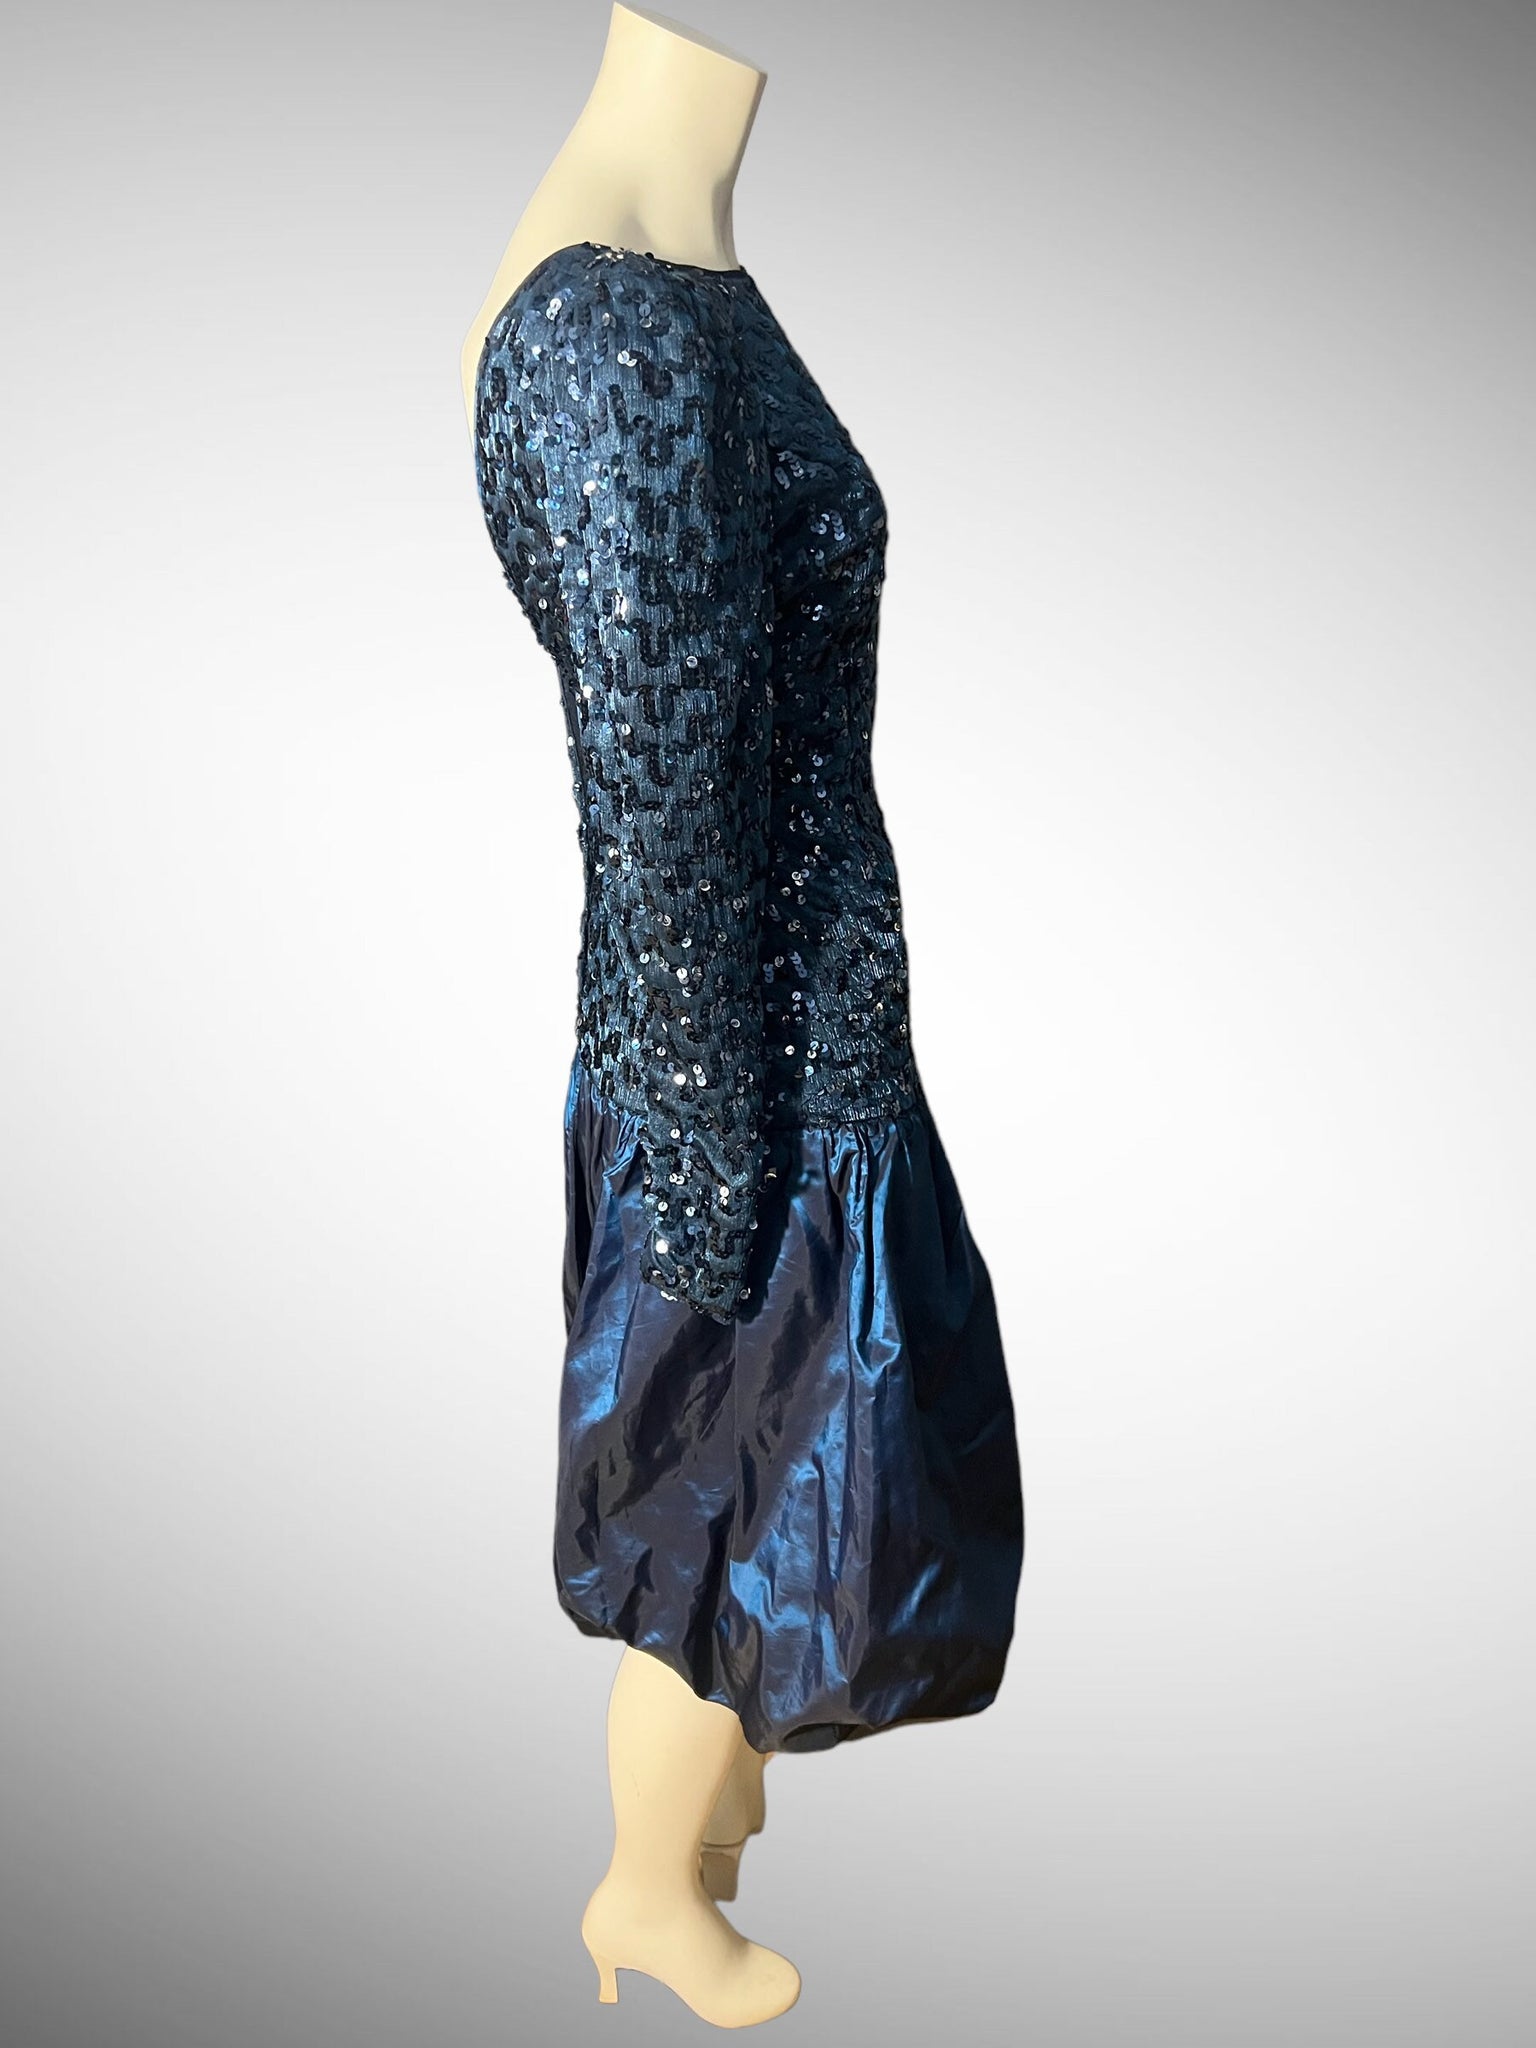 Vintage 80's sequin party dress drop waist S M